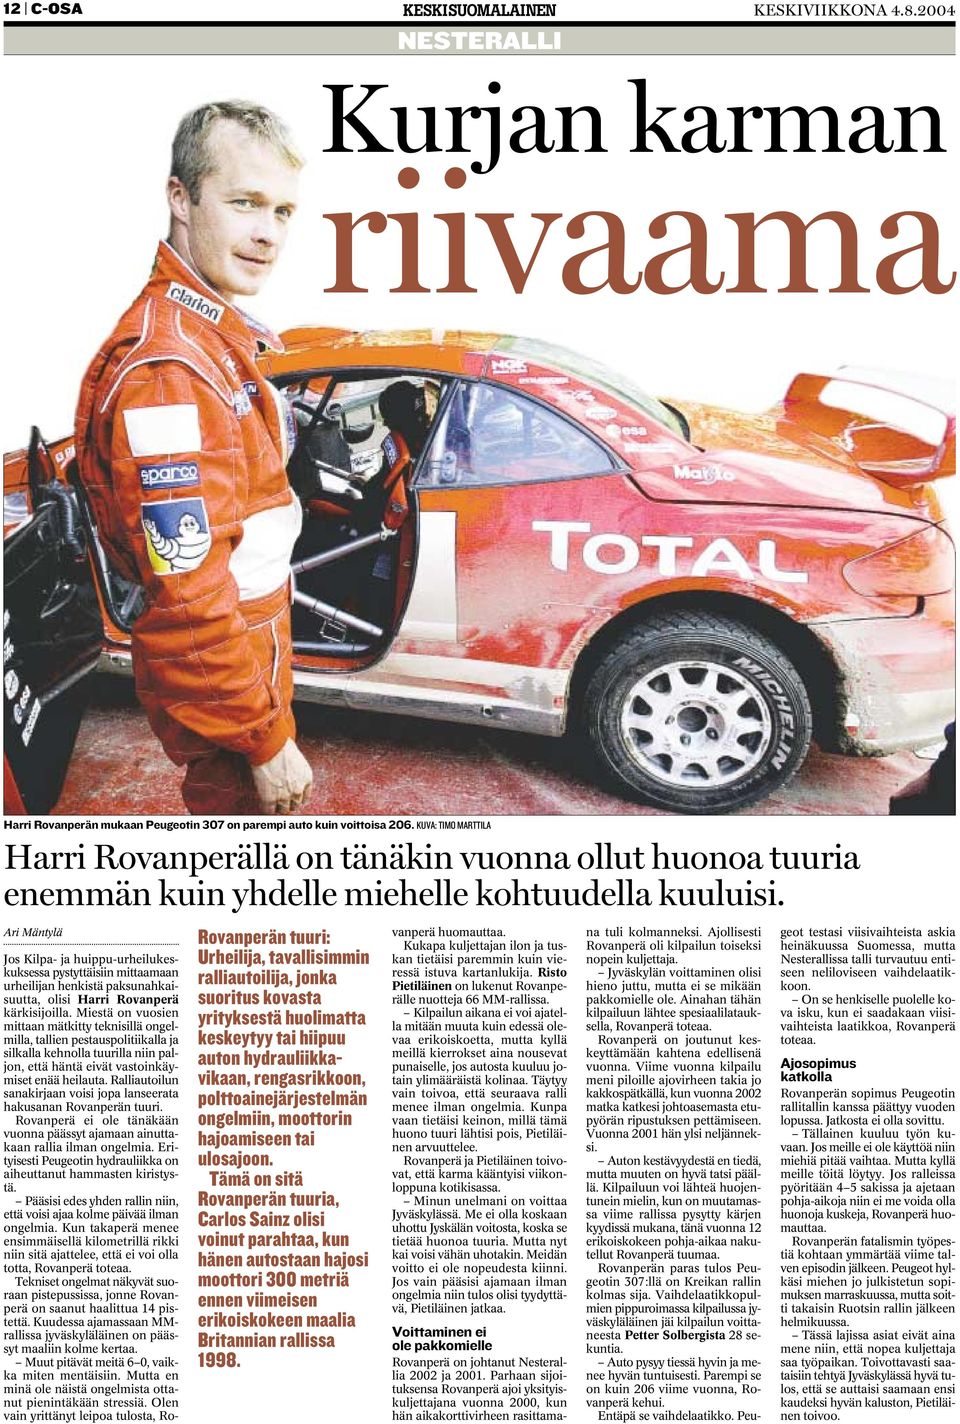 Ari Mäntylä Rovanperän tuuri: Urheilija, tavallisimmin ralliautoilija, jonka suoritus kovasta yrityksestä huolimatta keskeytyy tai hiipuu auton hydrauliikkavikaan, rengasrikkoon,